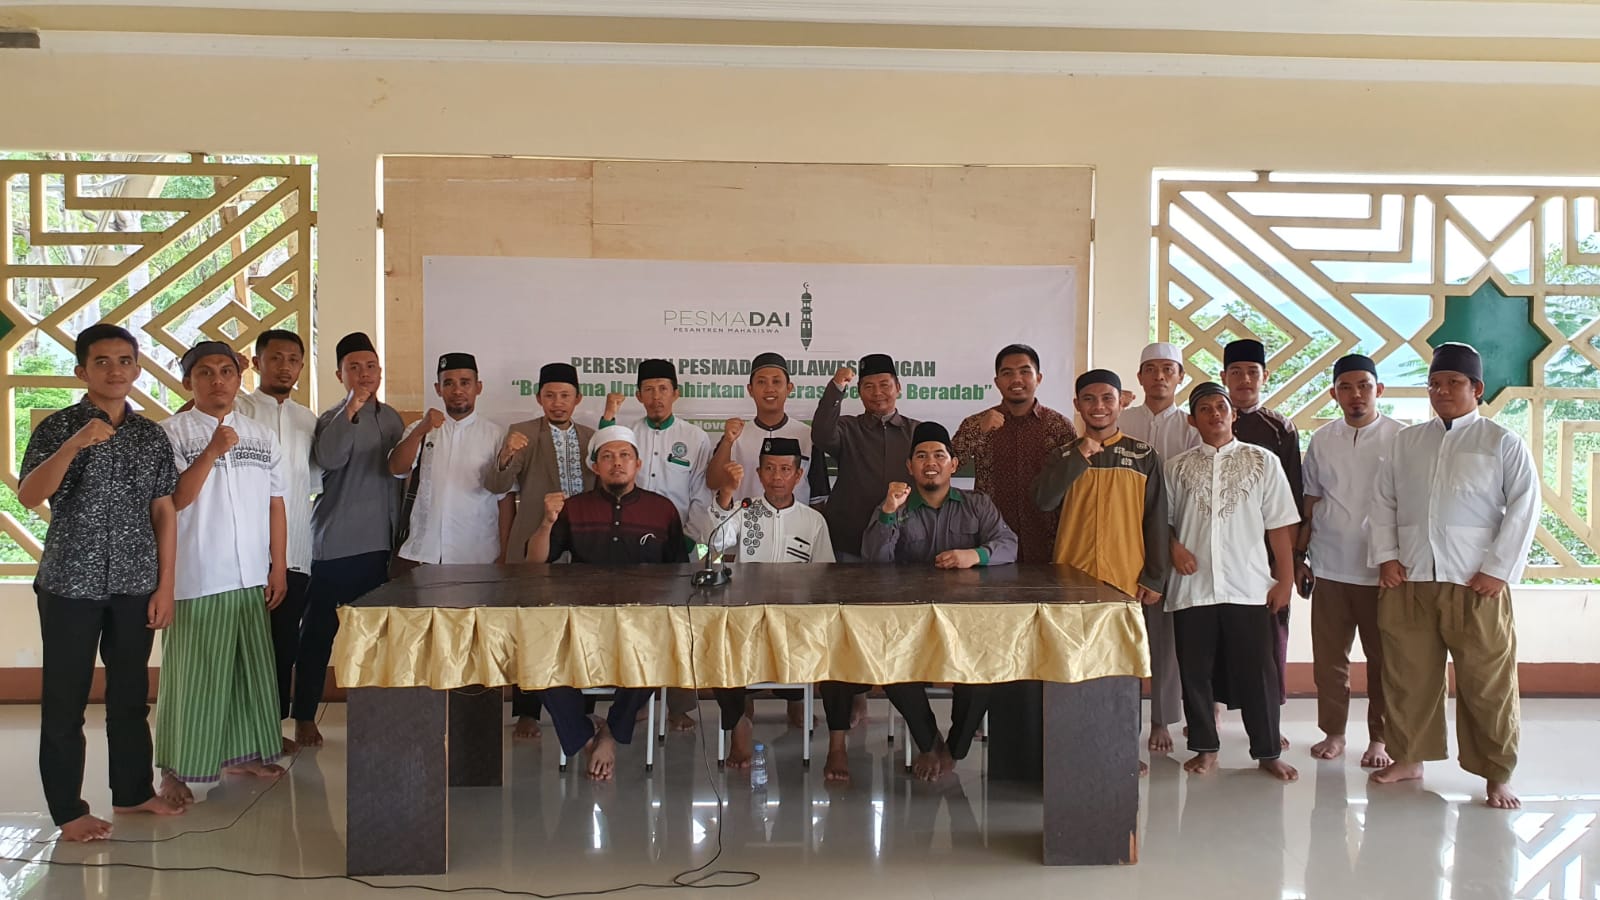 Cetak Generasi Muda, Pesmadai Cabang Palu dan Surabaya Resmi Dibuka